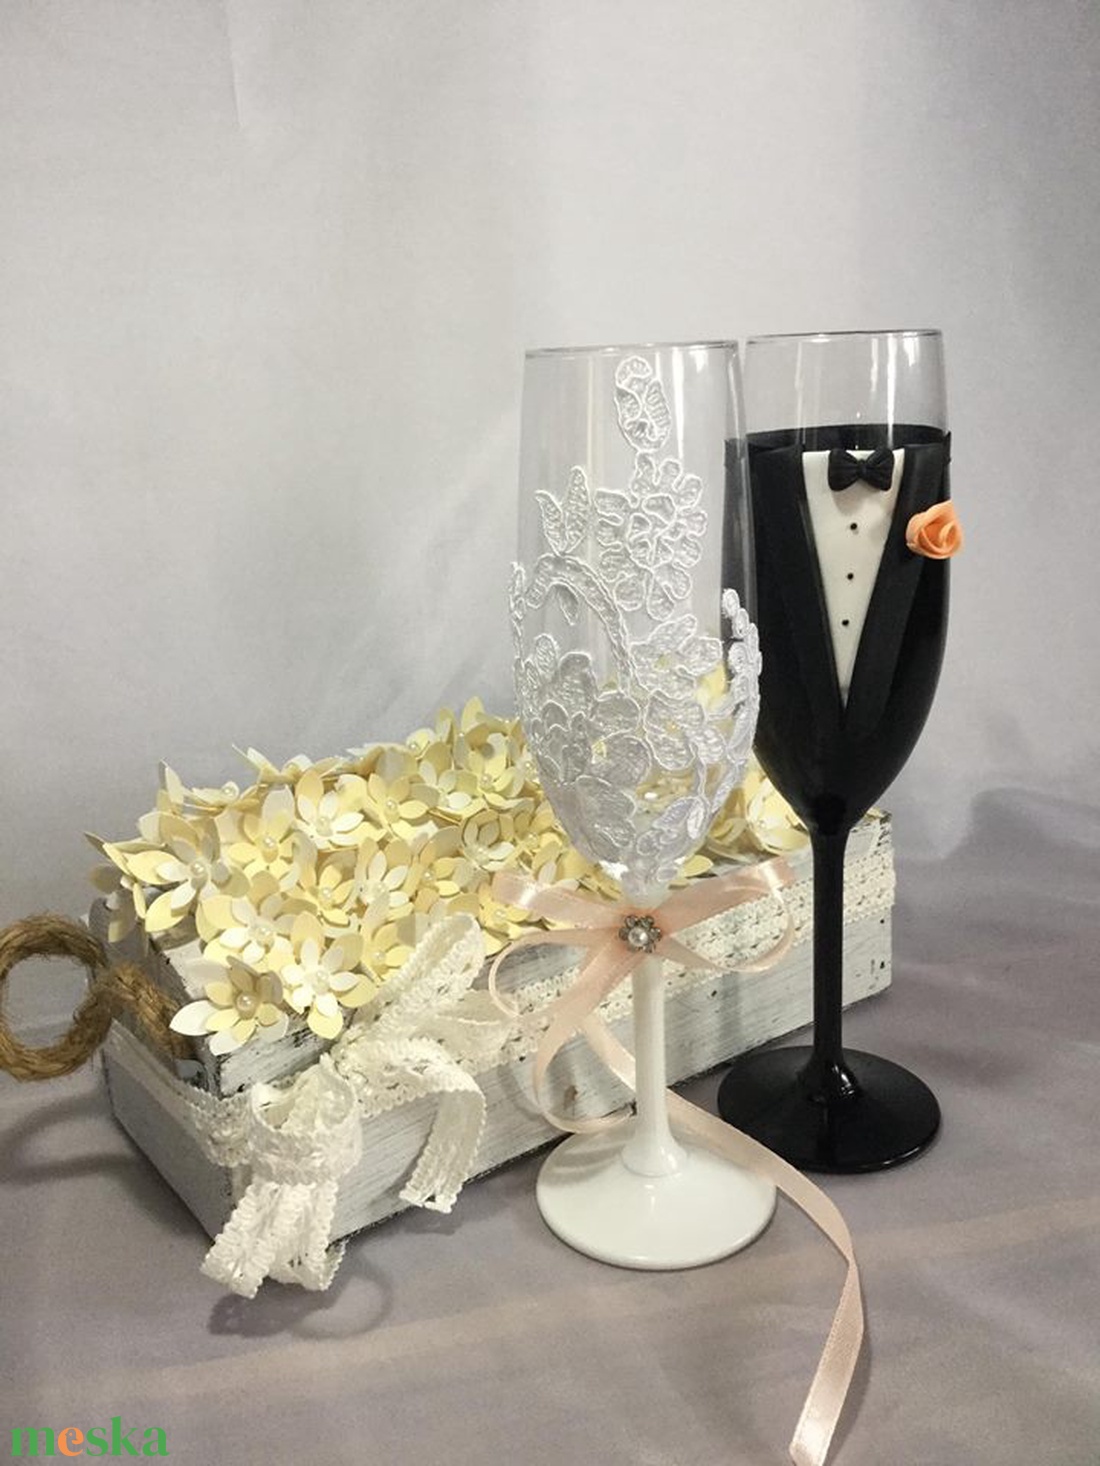  Esküvői pohár pár - esküvő - dekoráció - tálalás - Meska.hu